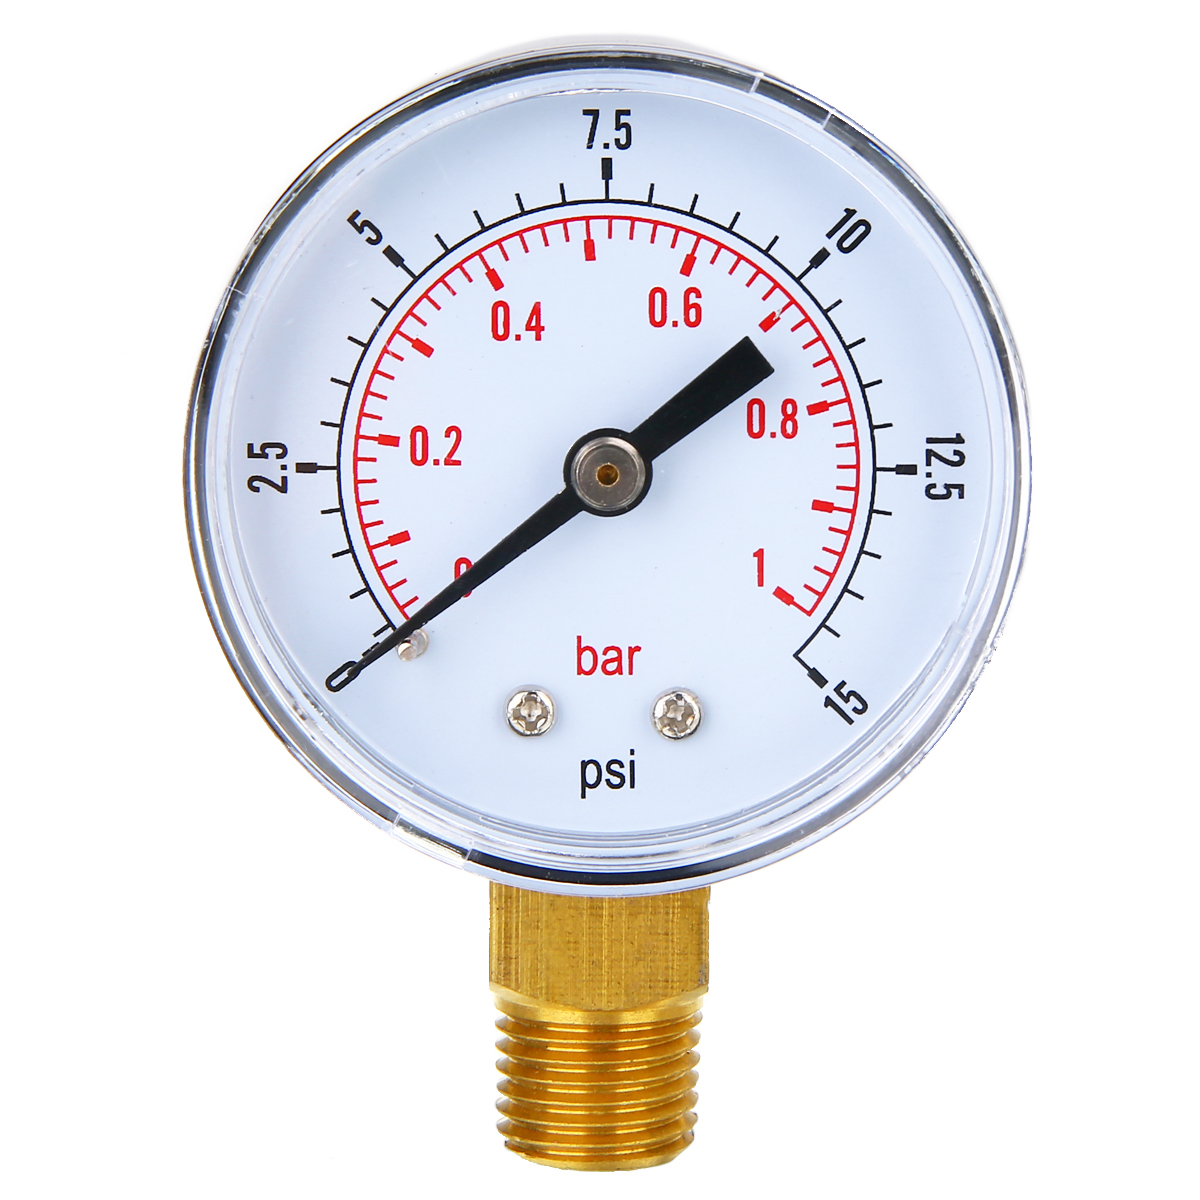 0-160psi /0-10bar Pressure Gauge Fuel Air Oil Water 1/8" NPT Thread Mounted SSP 